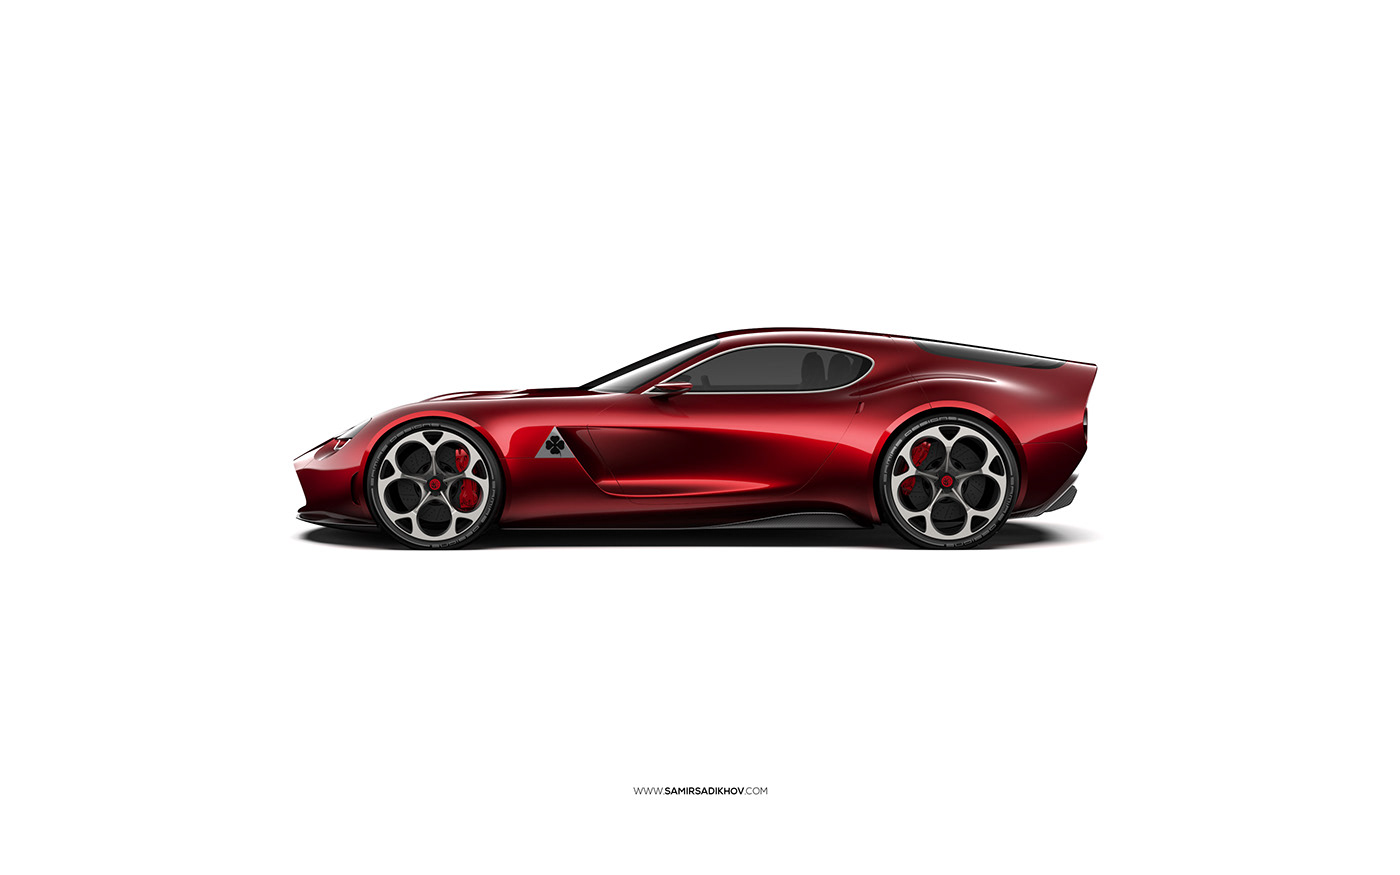 alfa romeo alfa romeo tz4 car design Cars gt italian samir sadikhov samirs designs sports car Vehicle